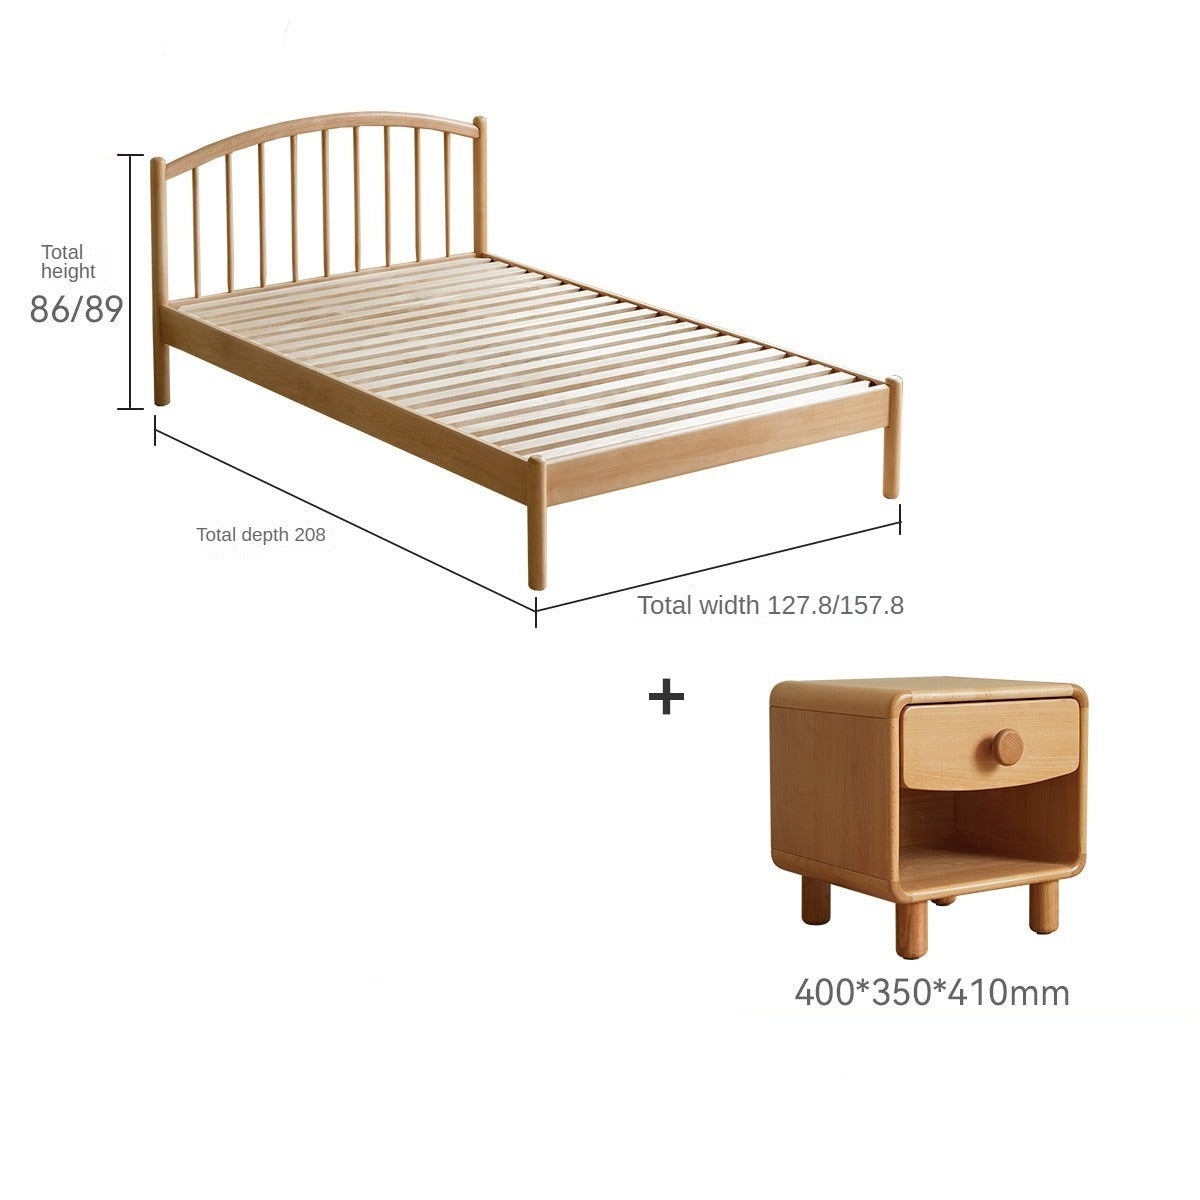 Beech Solid Wood Children's Bed_.